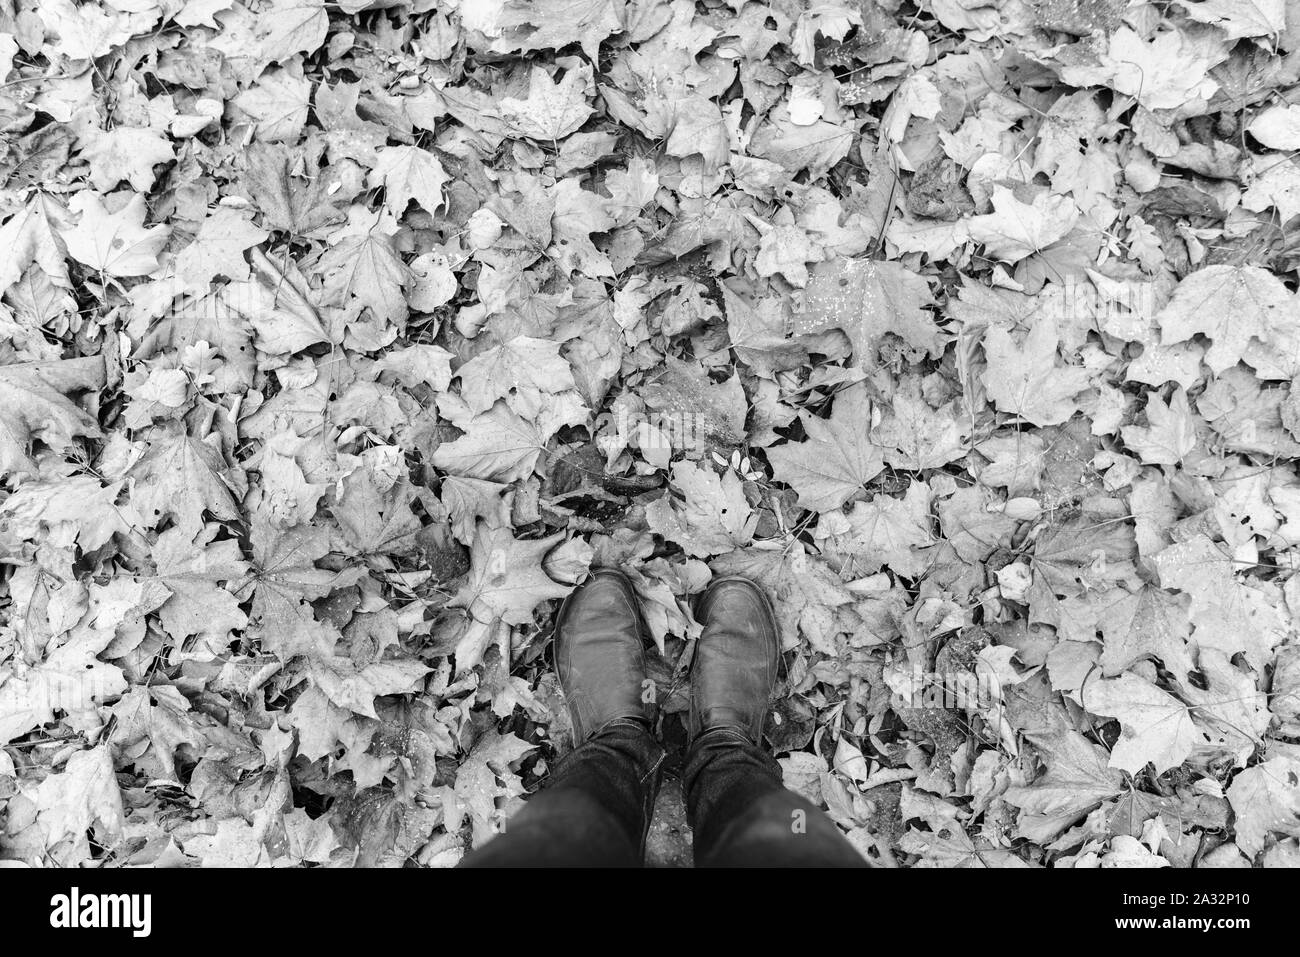 Des selfies Chaussure homme debout sur les feuilles d'automne en noir et blanc Banque D'Images